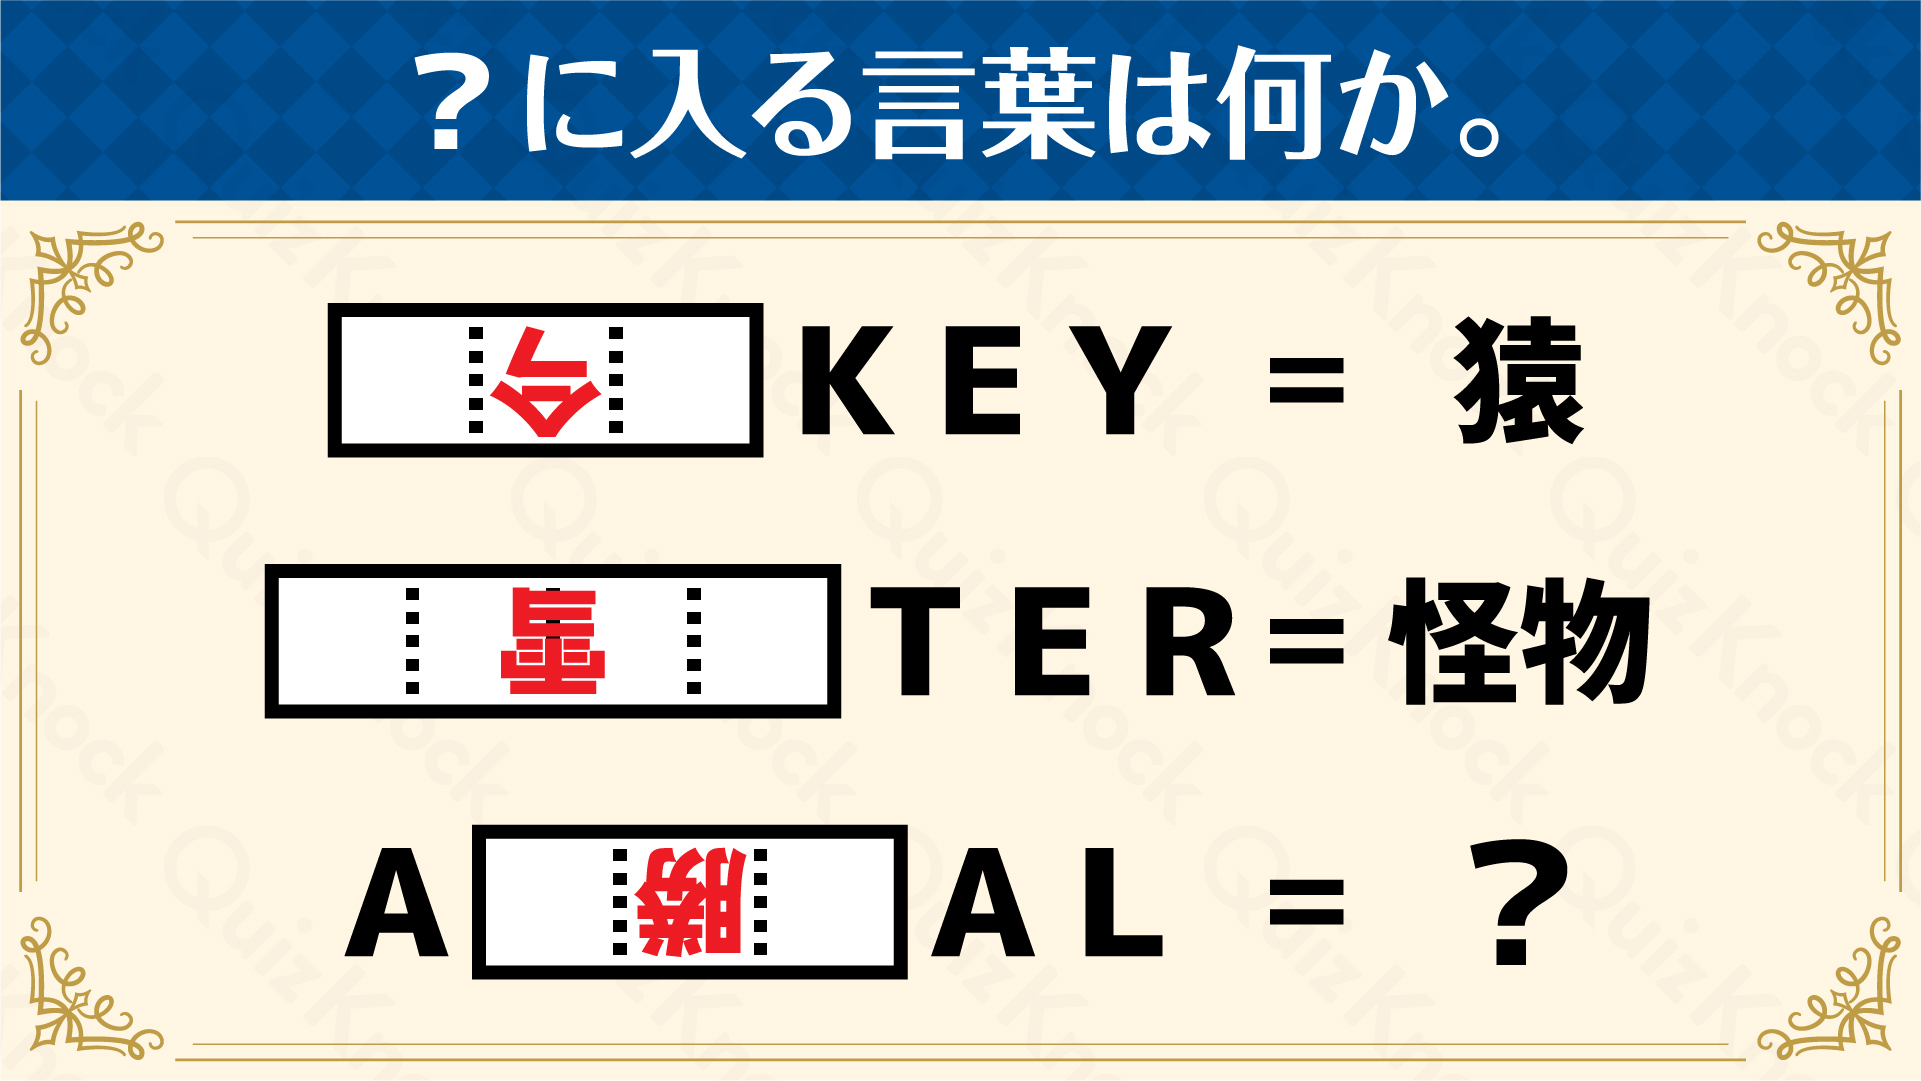 逆さ漢字の謎を解け ひらめき謎解き ウィークリー謎解き